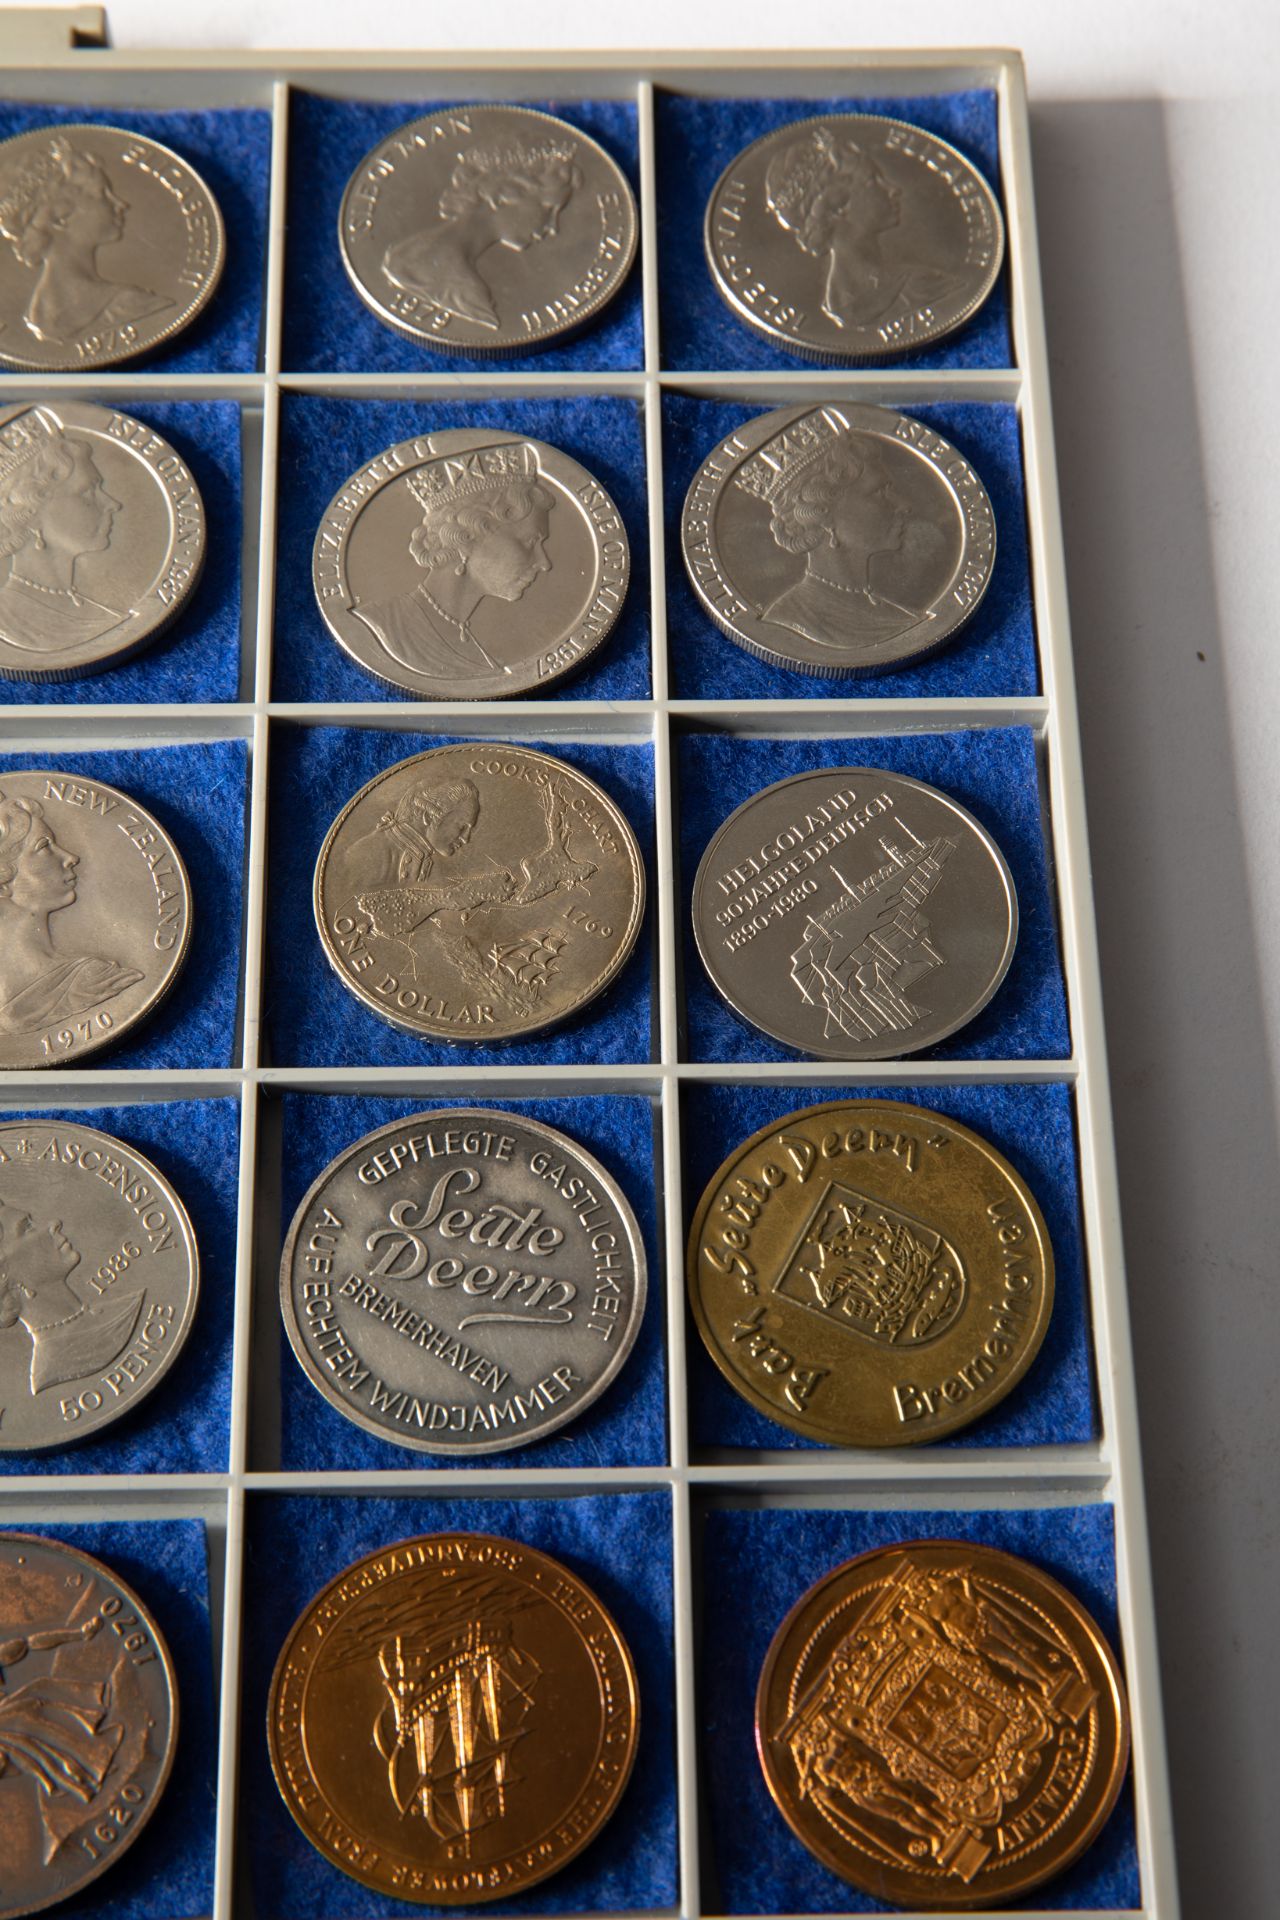 26 silver coins & 8 medals, ships 1969-1988 worldwide - Bild 11 aus 13